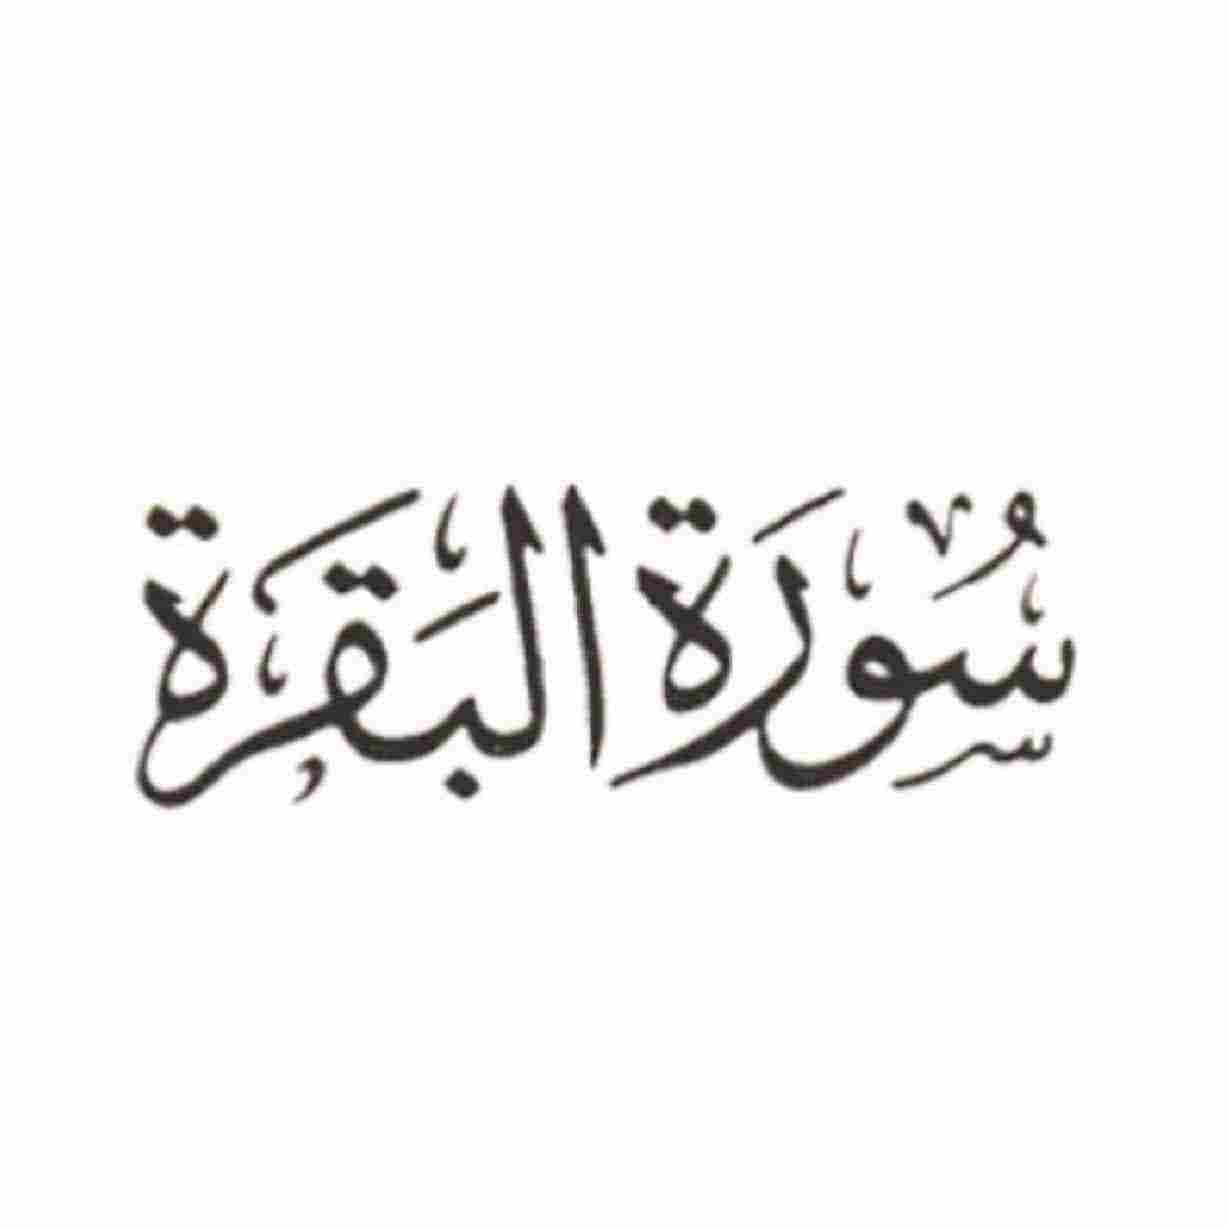 القرآن الكريم أطول قصة في ماهي ماهي اطول